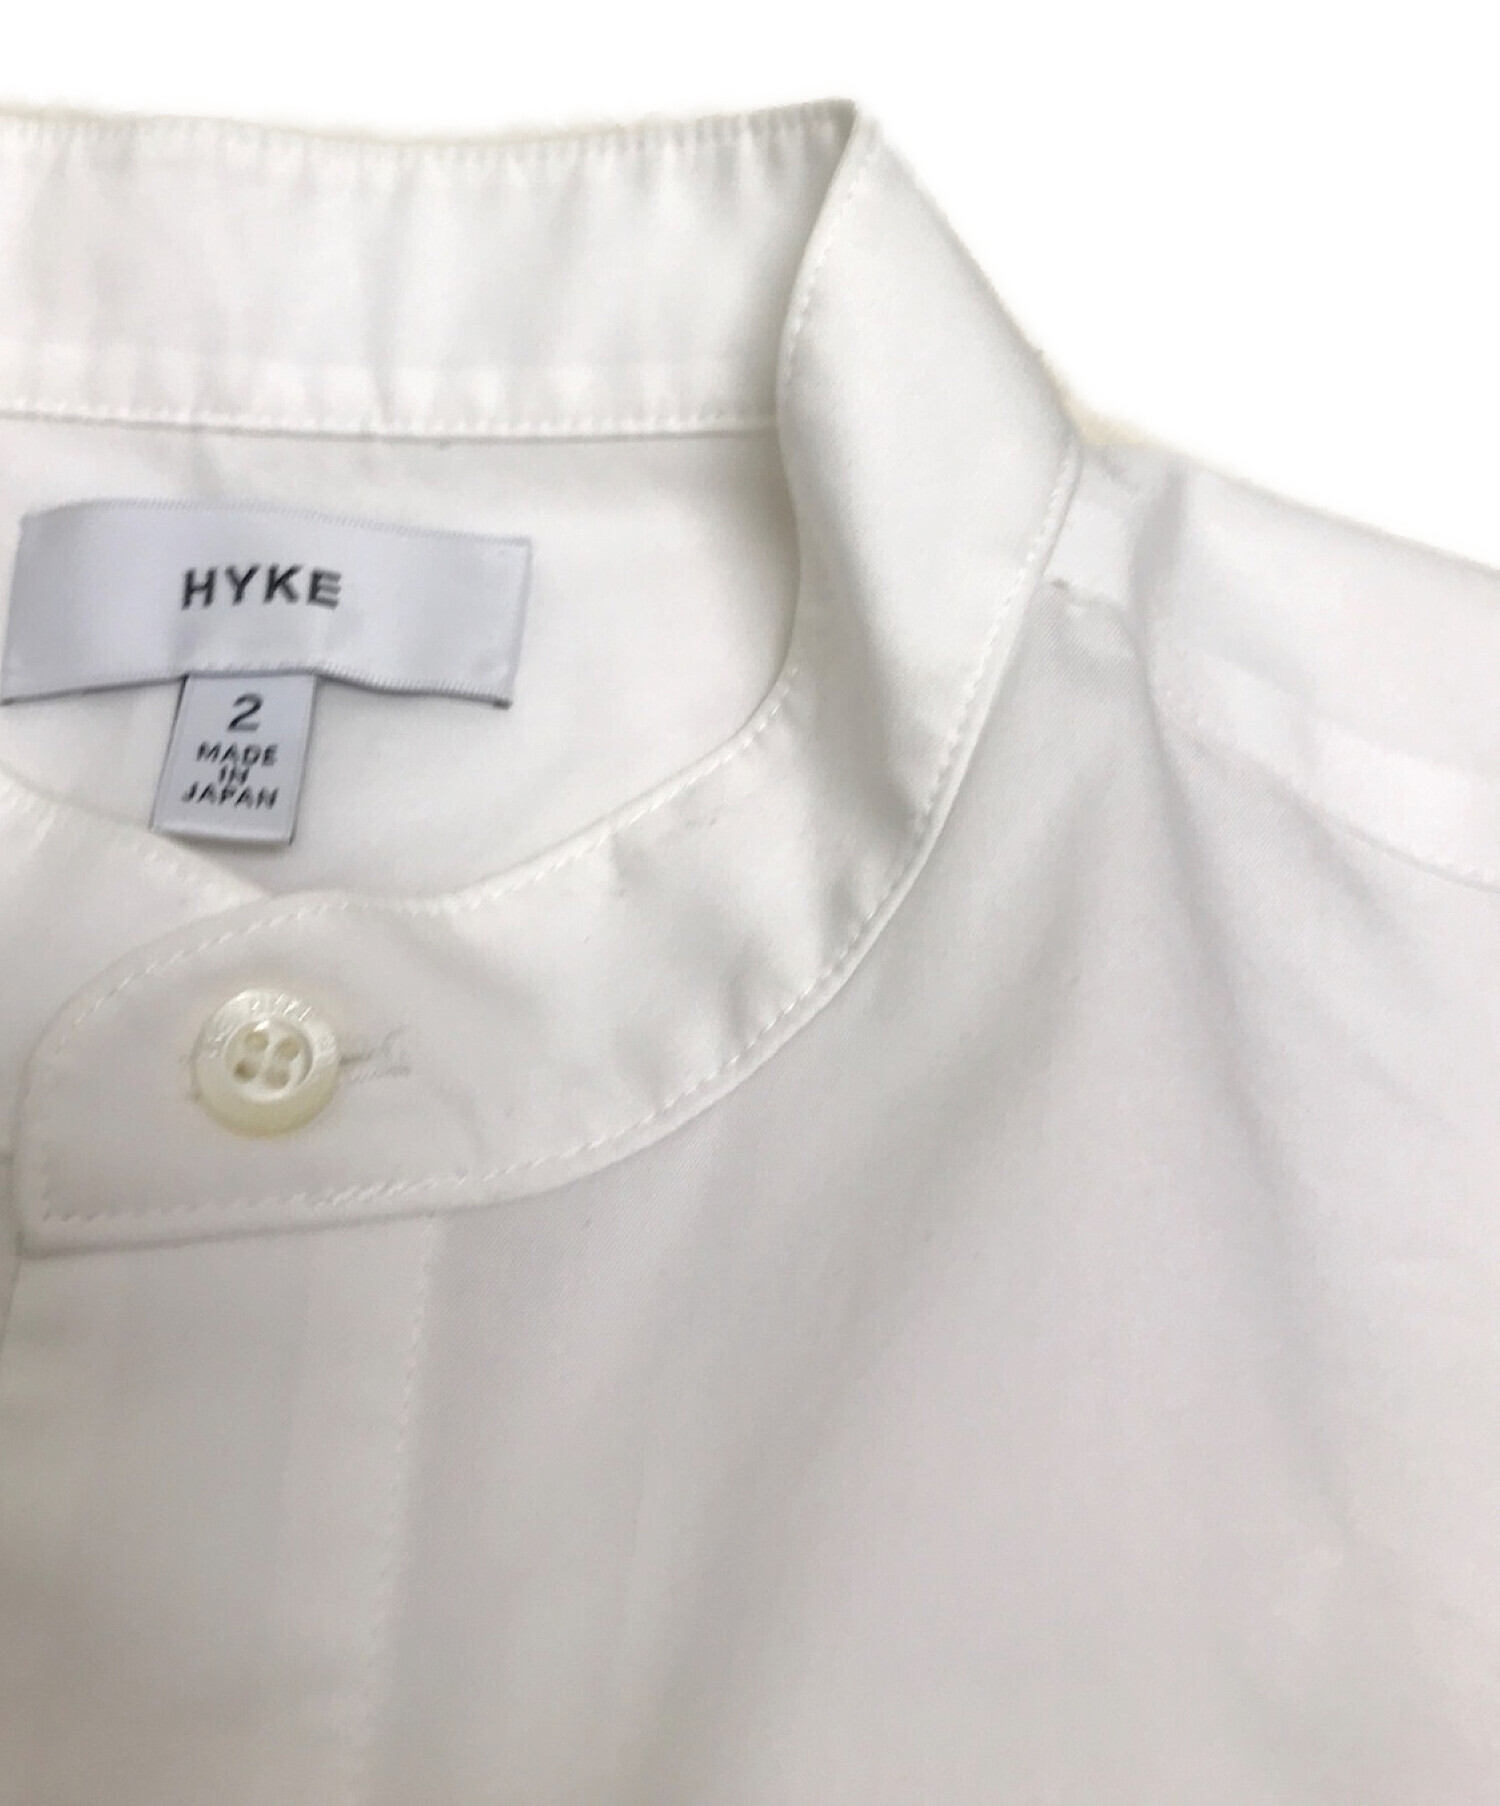 HYKE (ハイク) プルオーバースタンドカラーシャツワンピース ホワイト サイズ:2